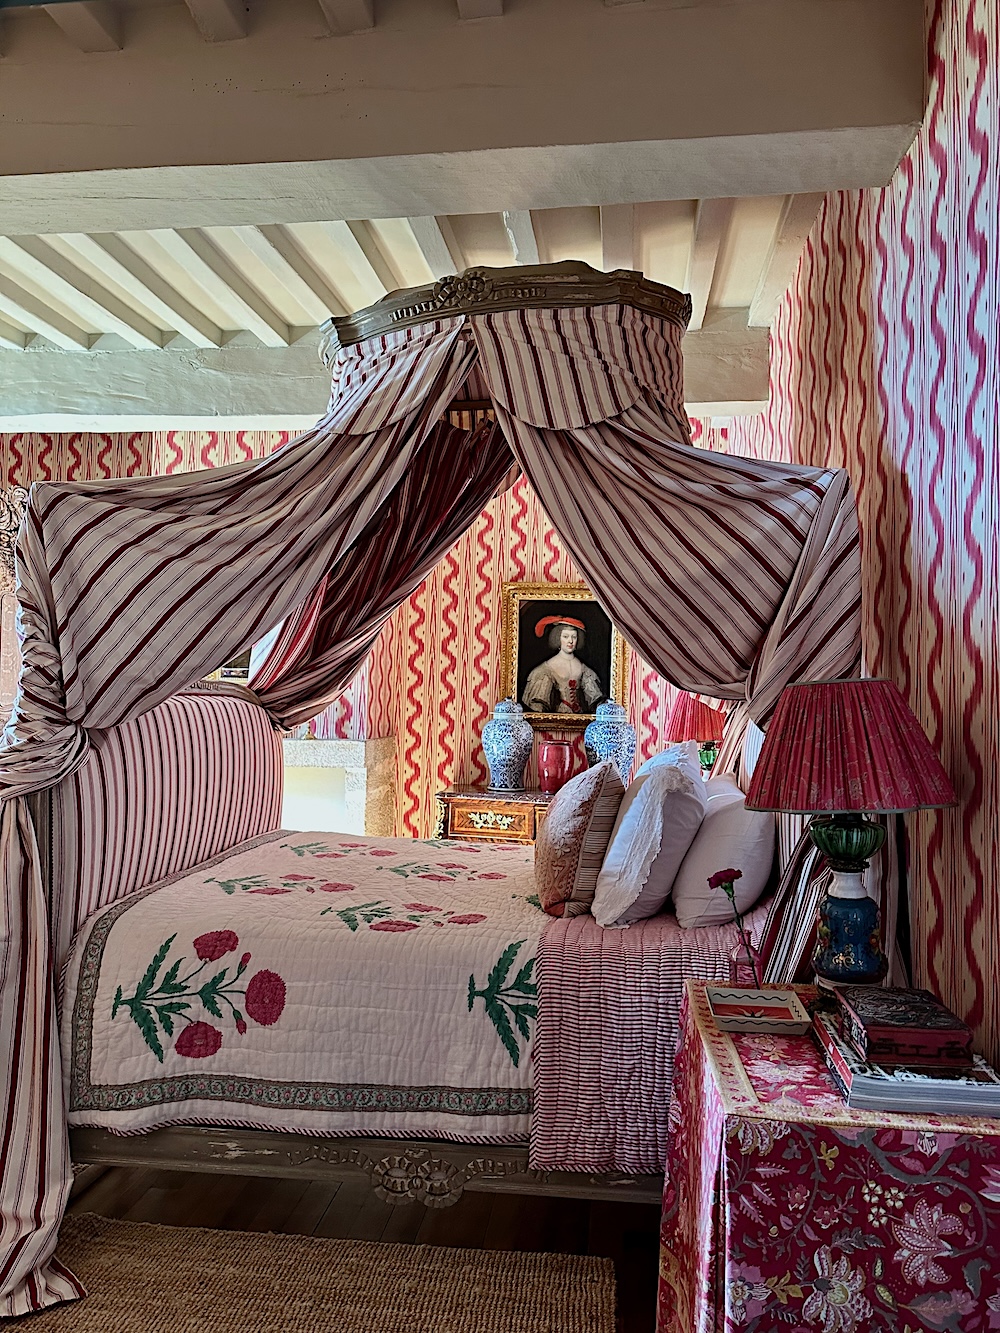 Guest bedroom at La Carlière via Quintessence